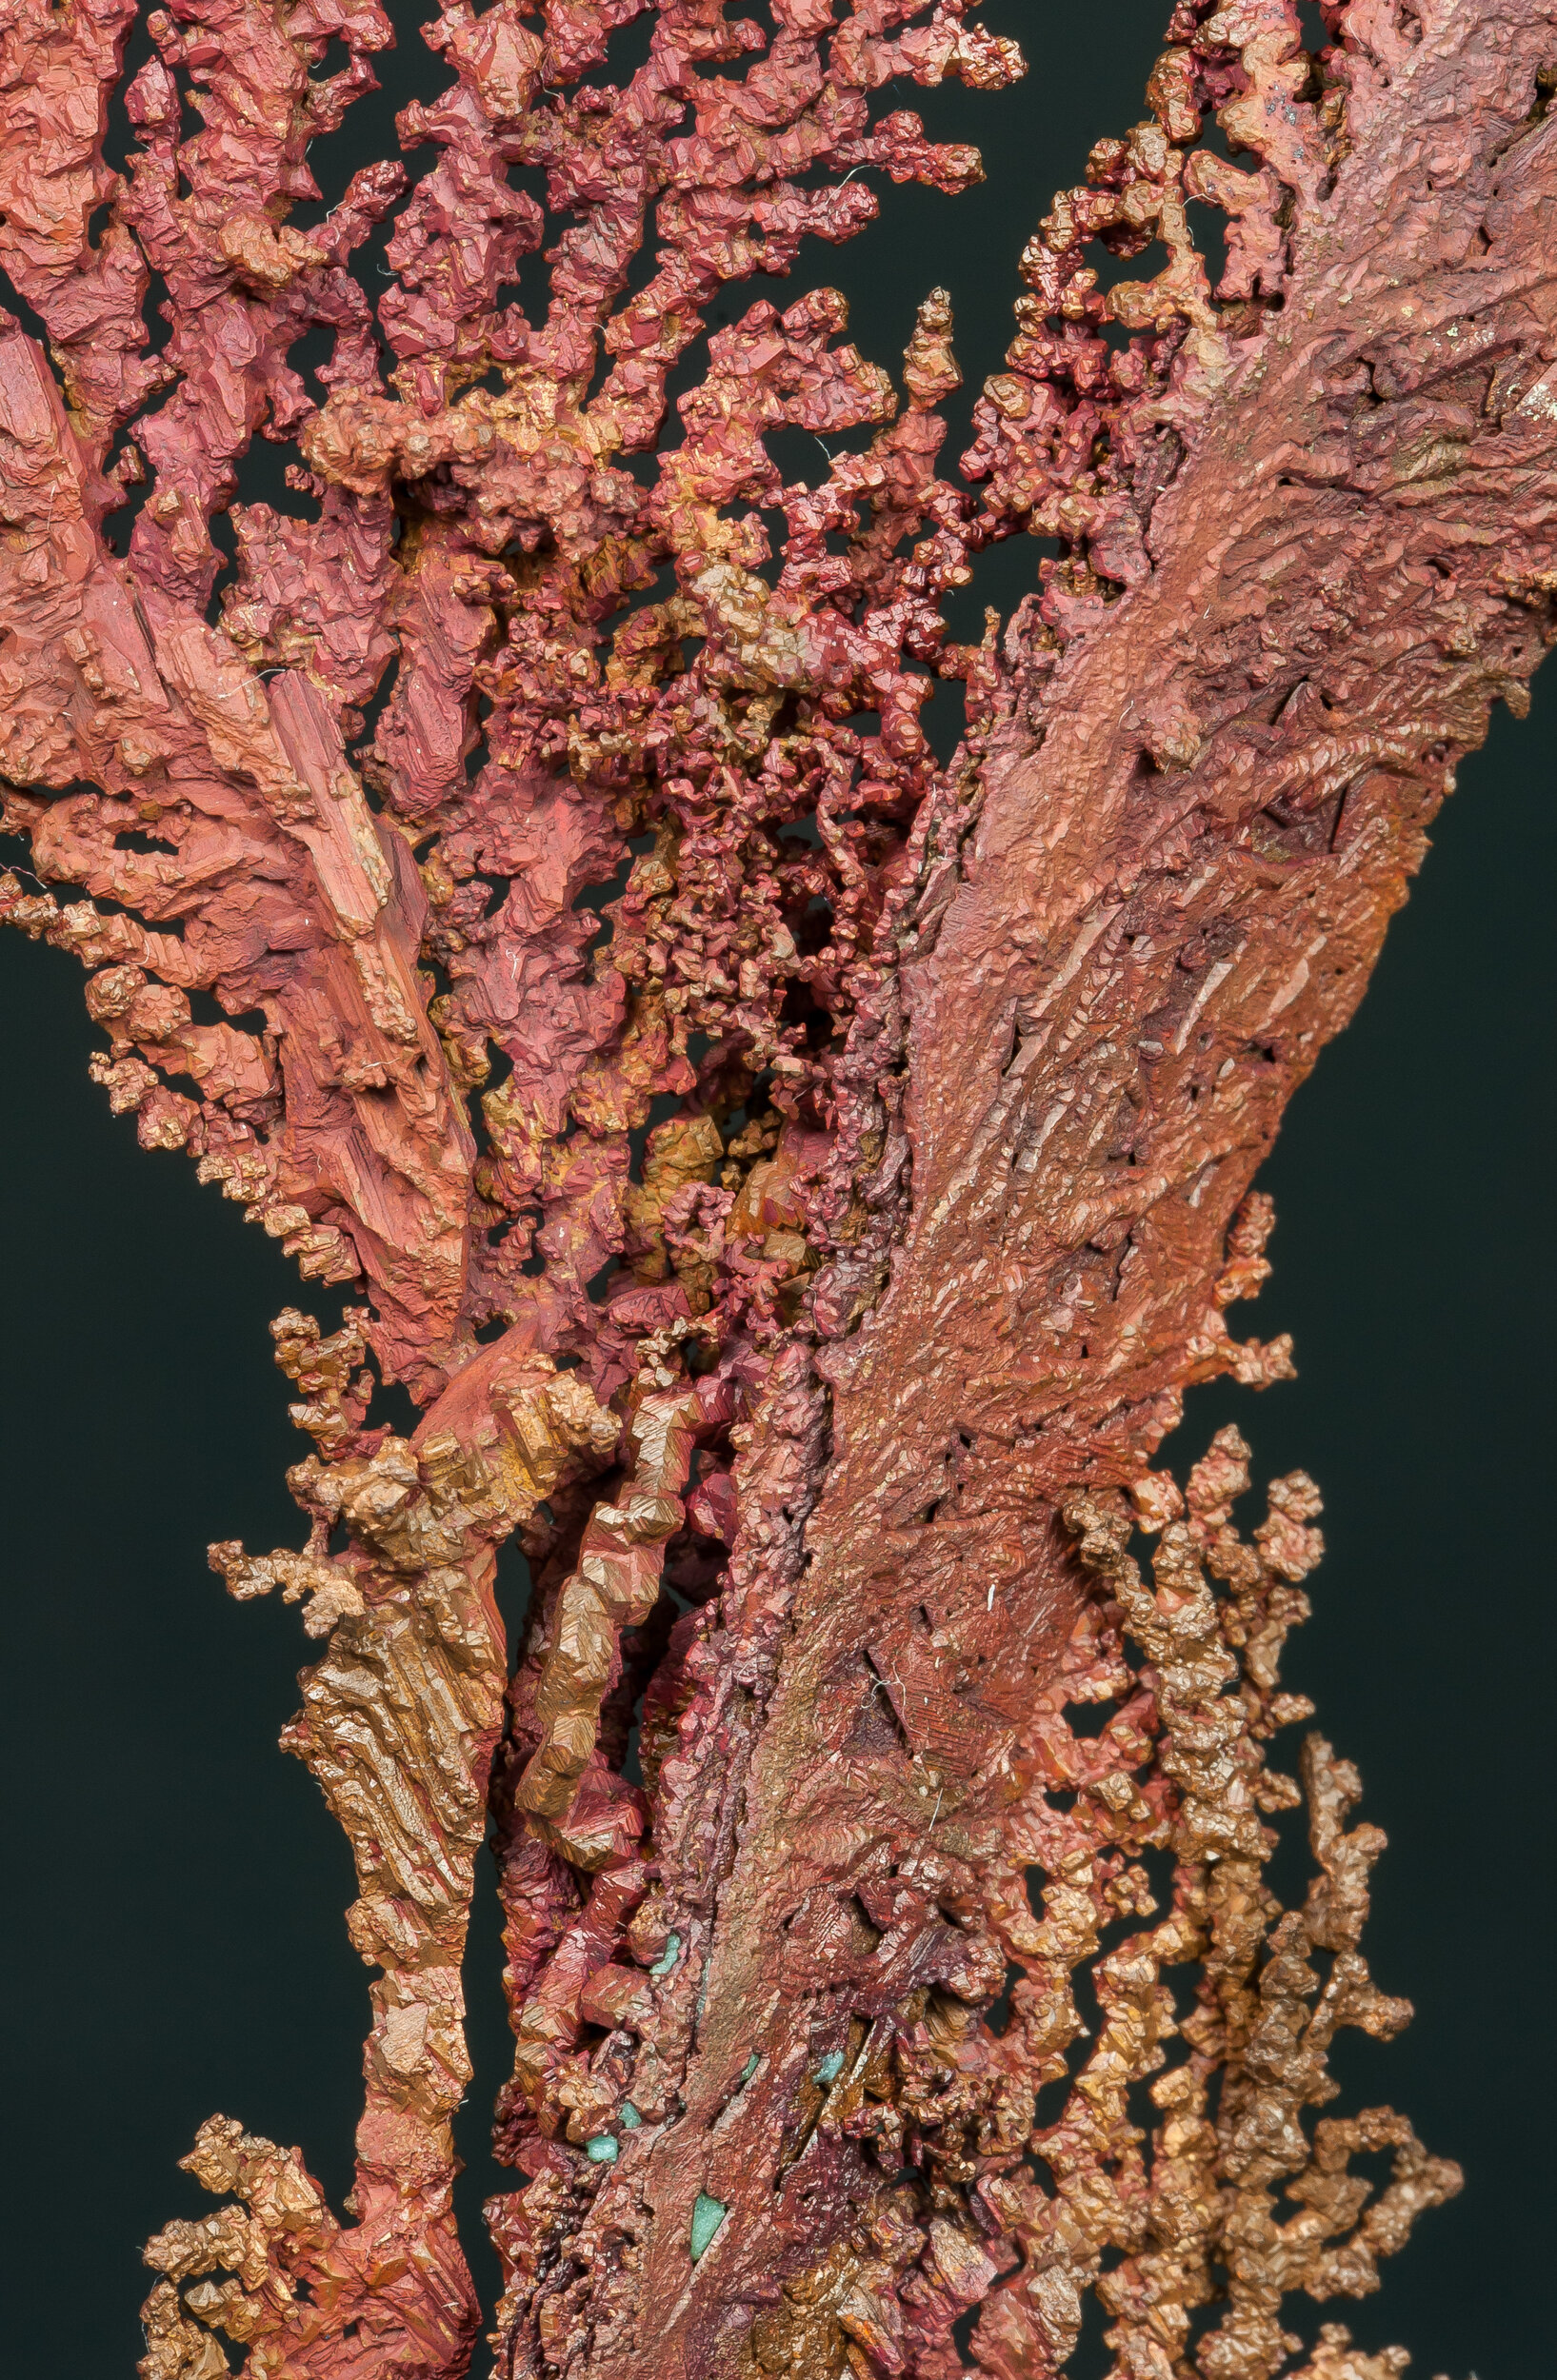 specimens/s_imagesAQ1/Copper-TXF91AQ1d.jpg